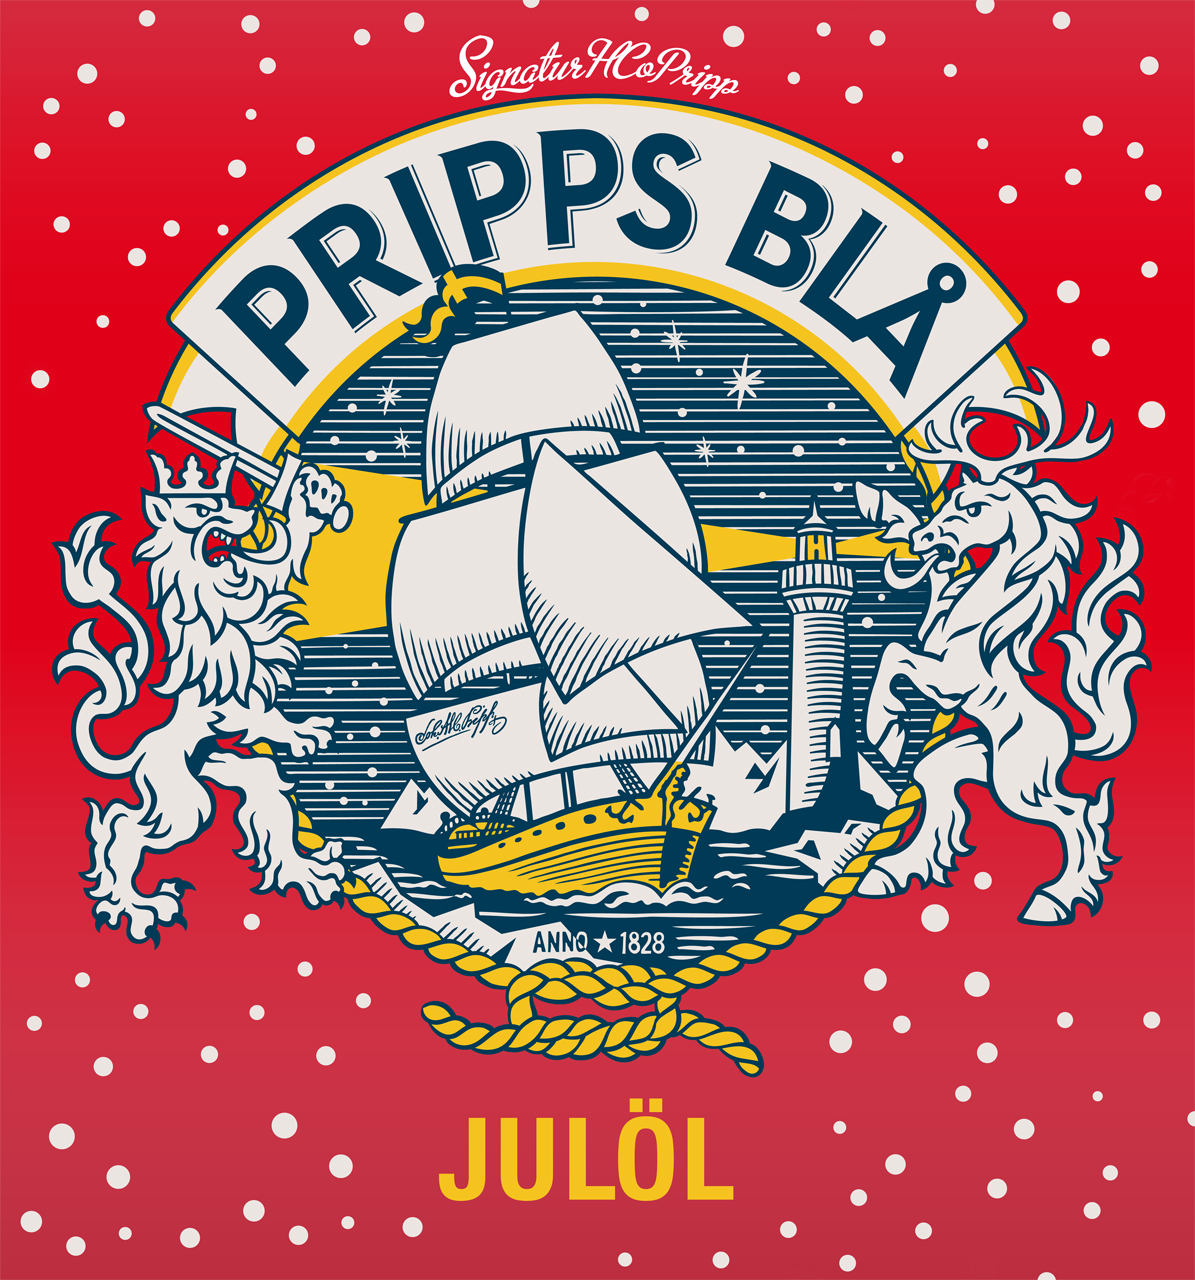 Pripps Blå Christmas beer label